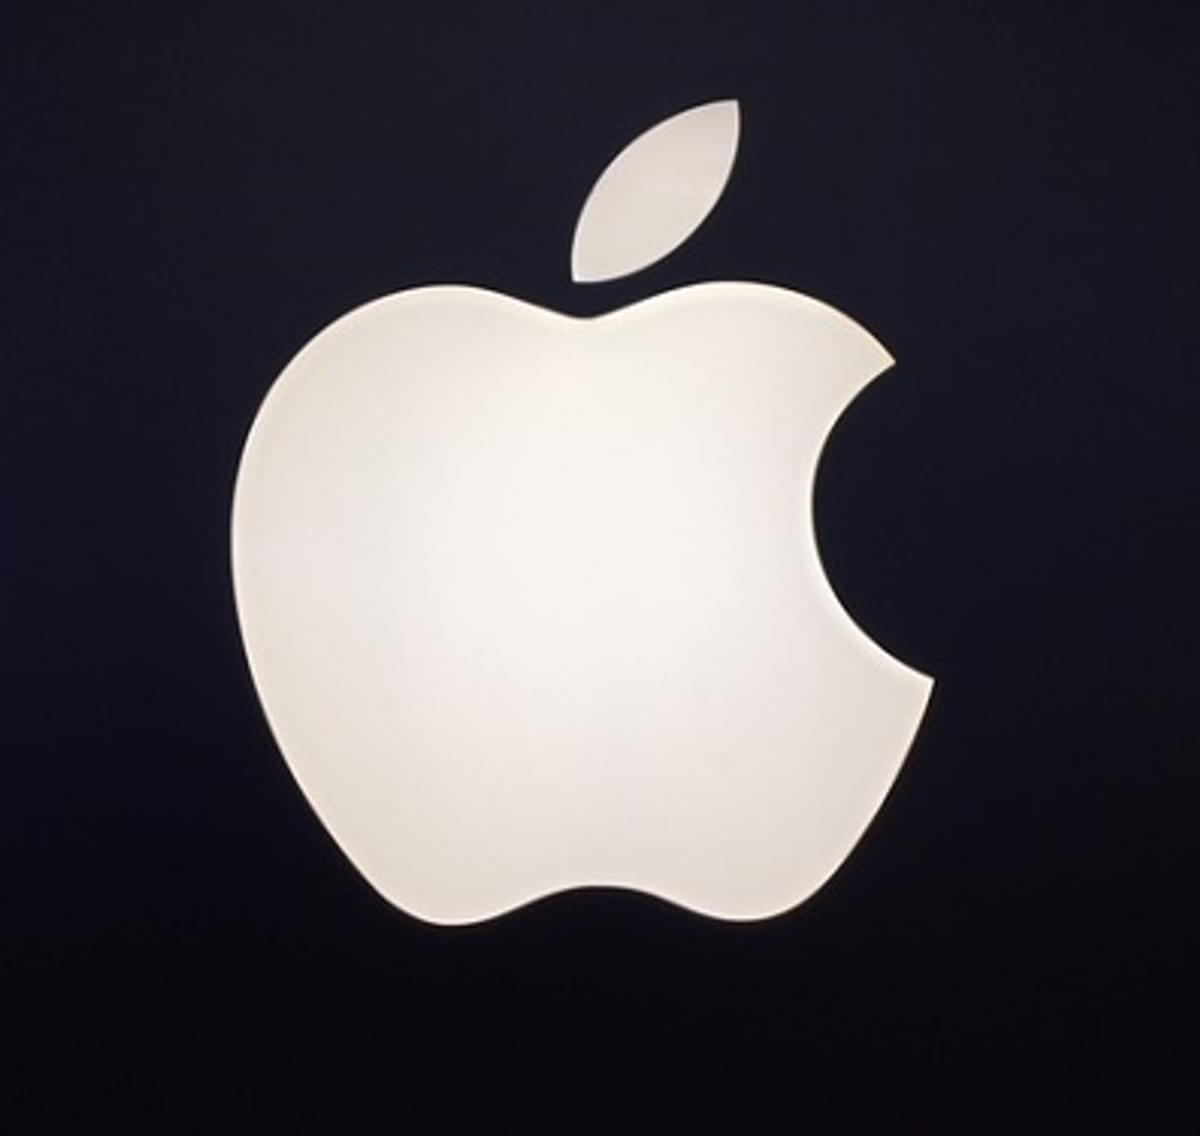 Apple verliest eerste copyright-rechtszaak tegen securitybedrijf image